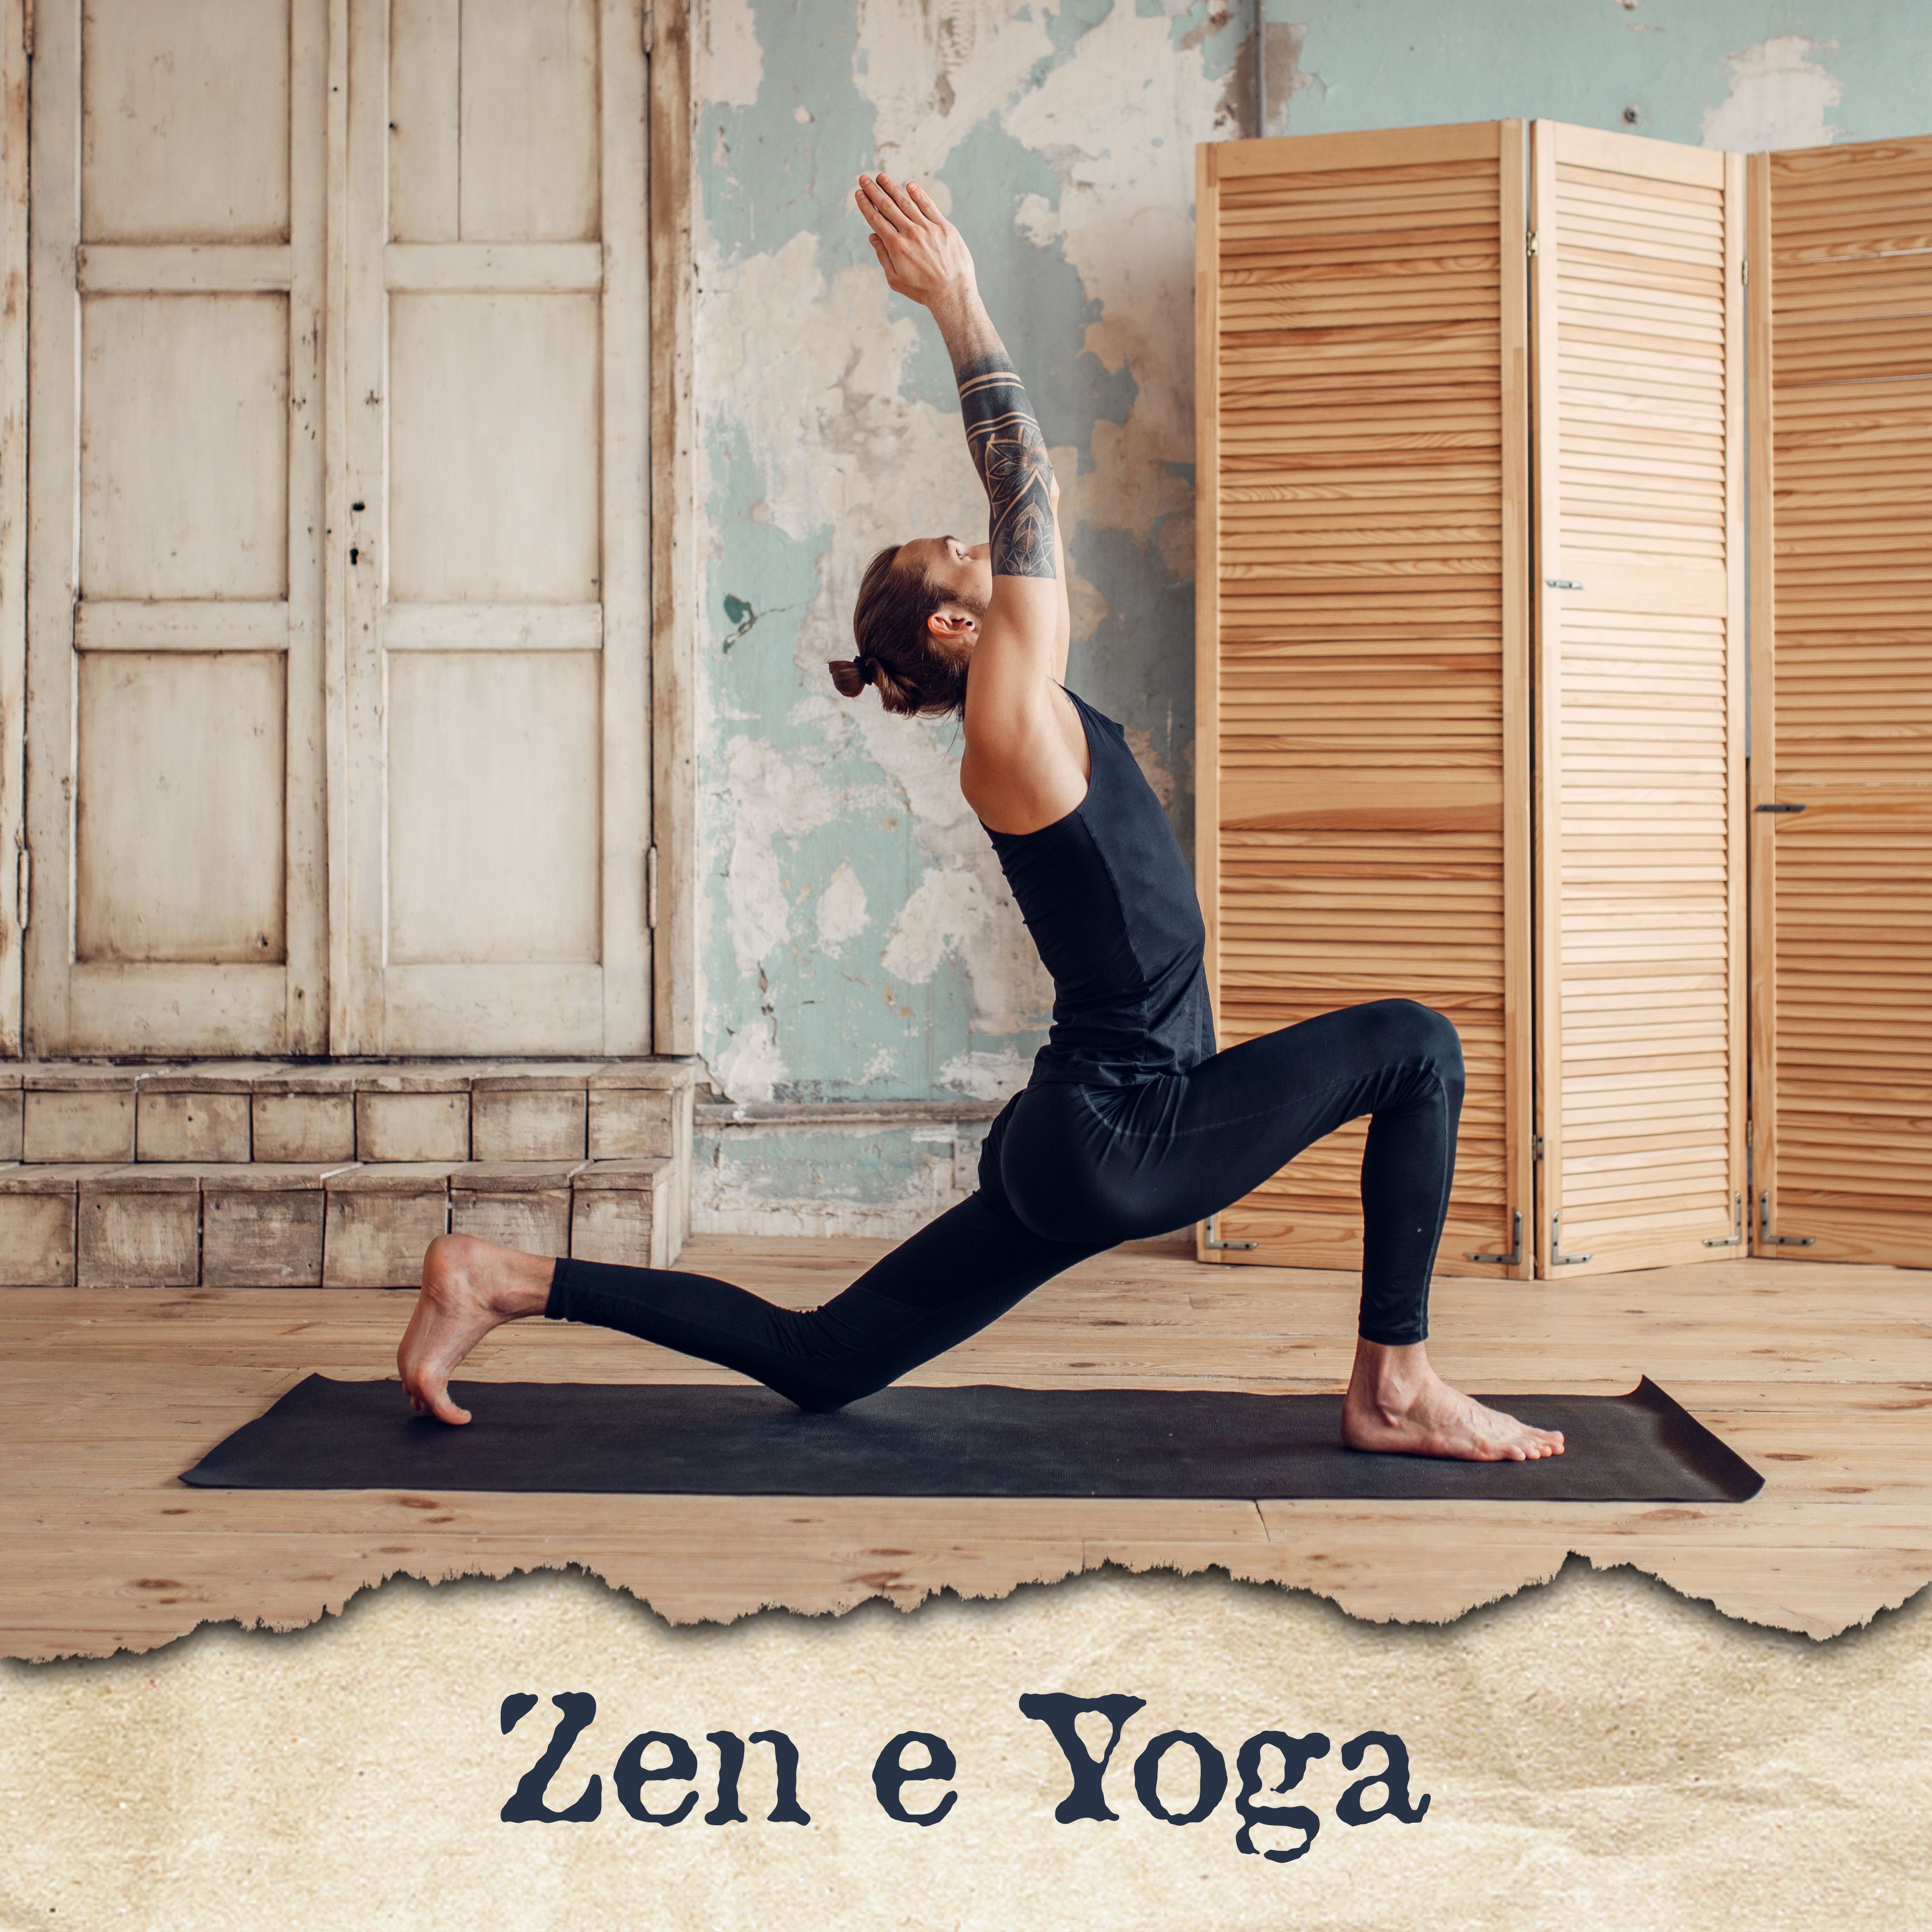 Zen e Yoga: Música para Meditação e Prática de Yoga